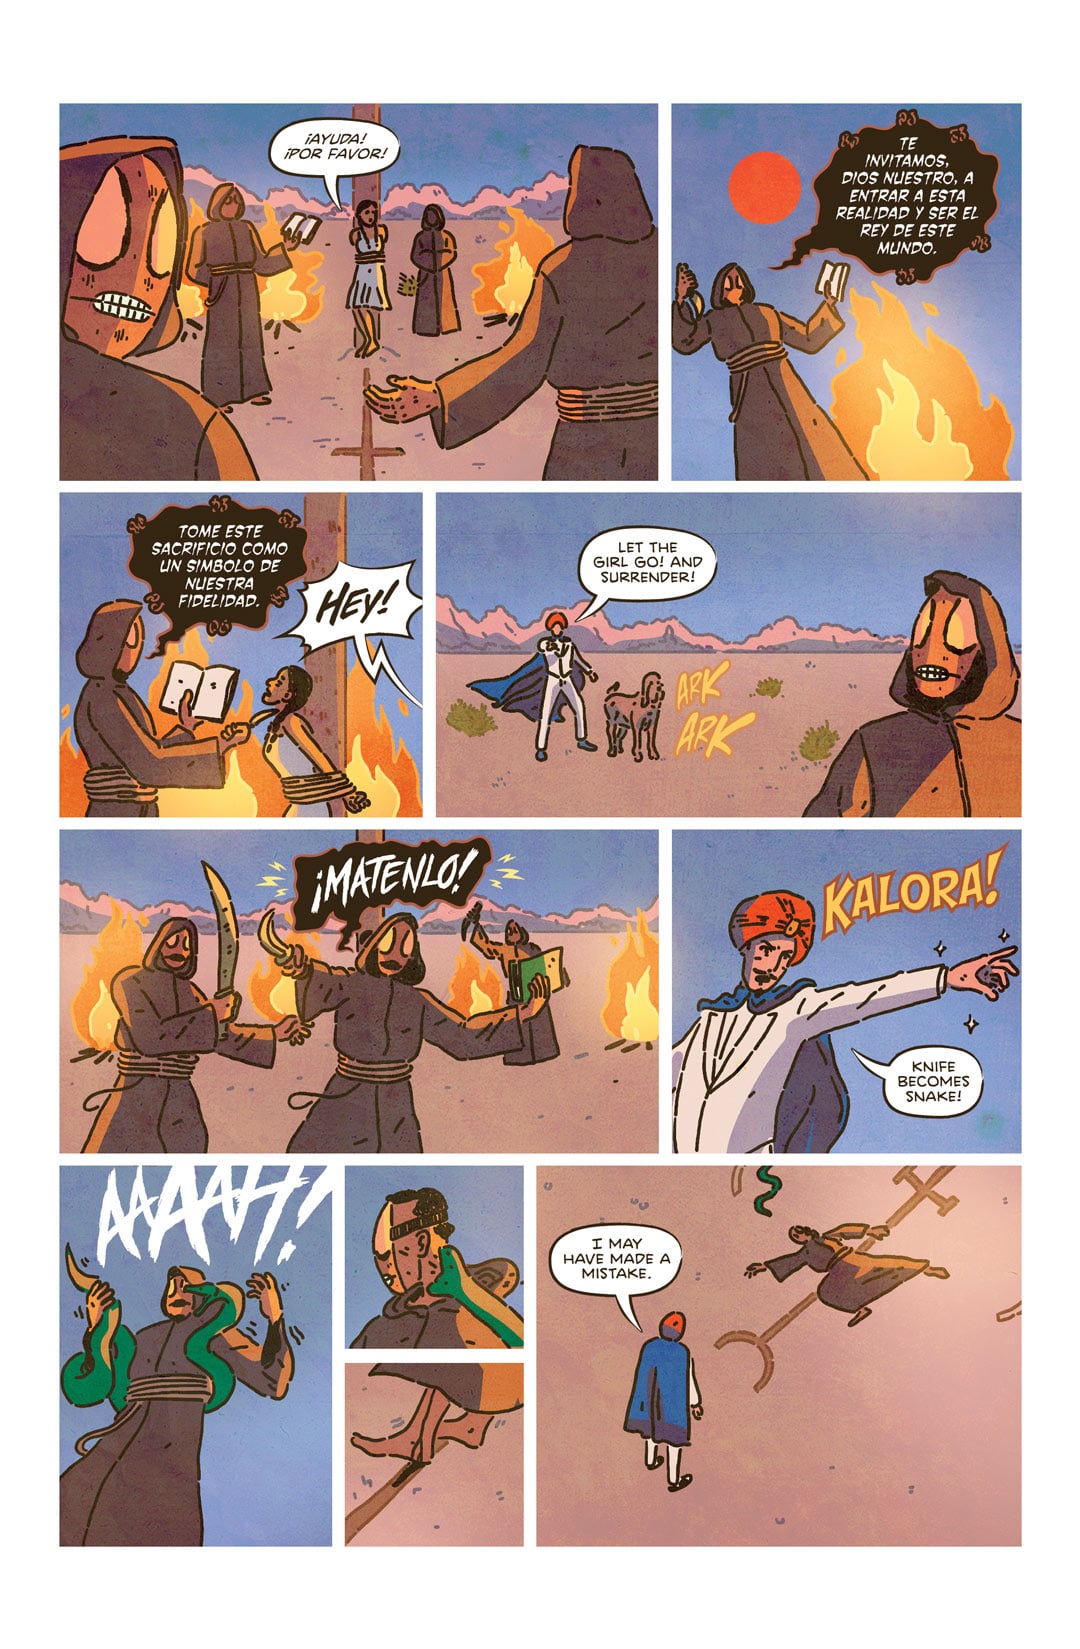 marvelo comic page 4 written by edwin lopez